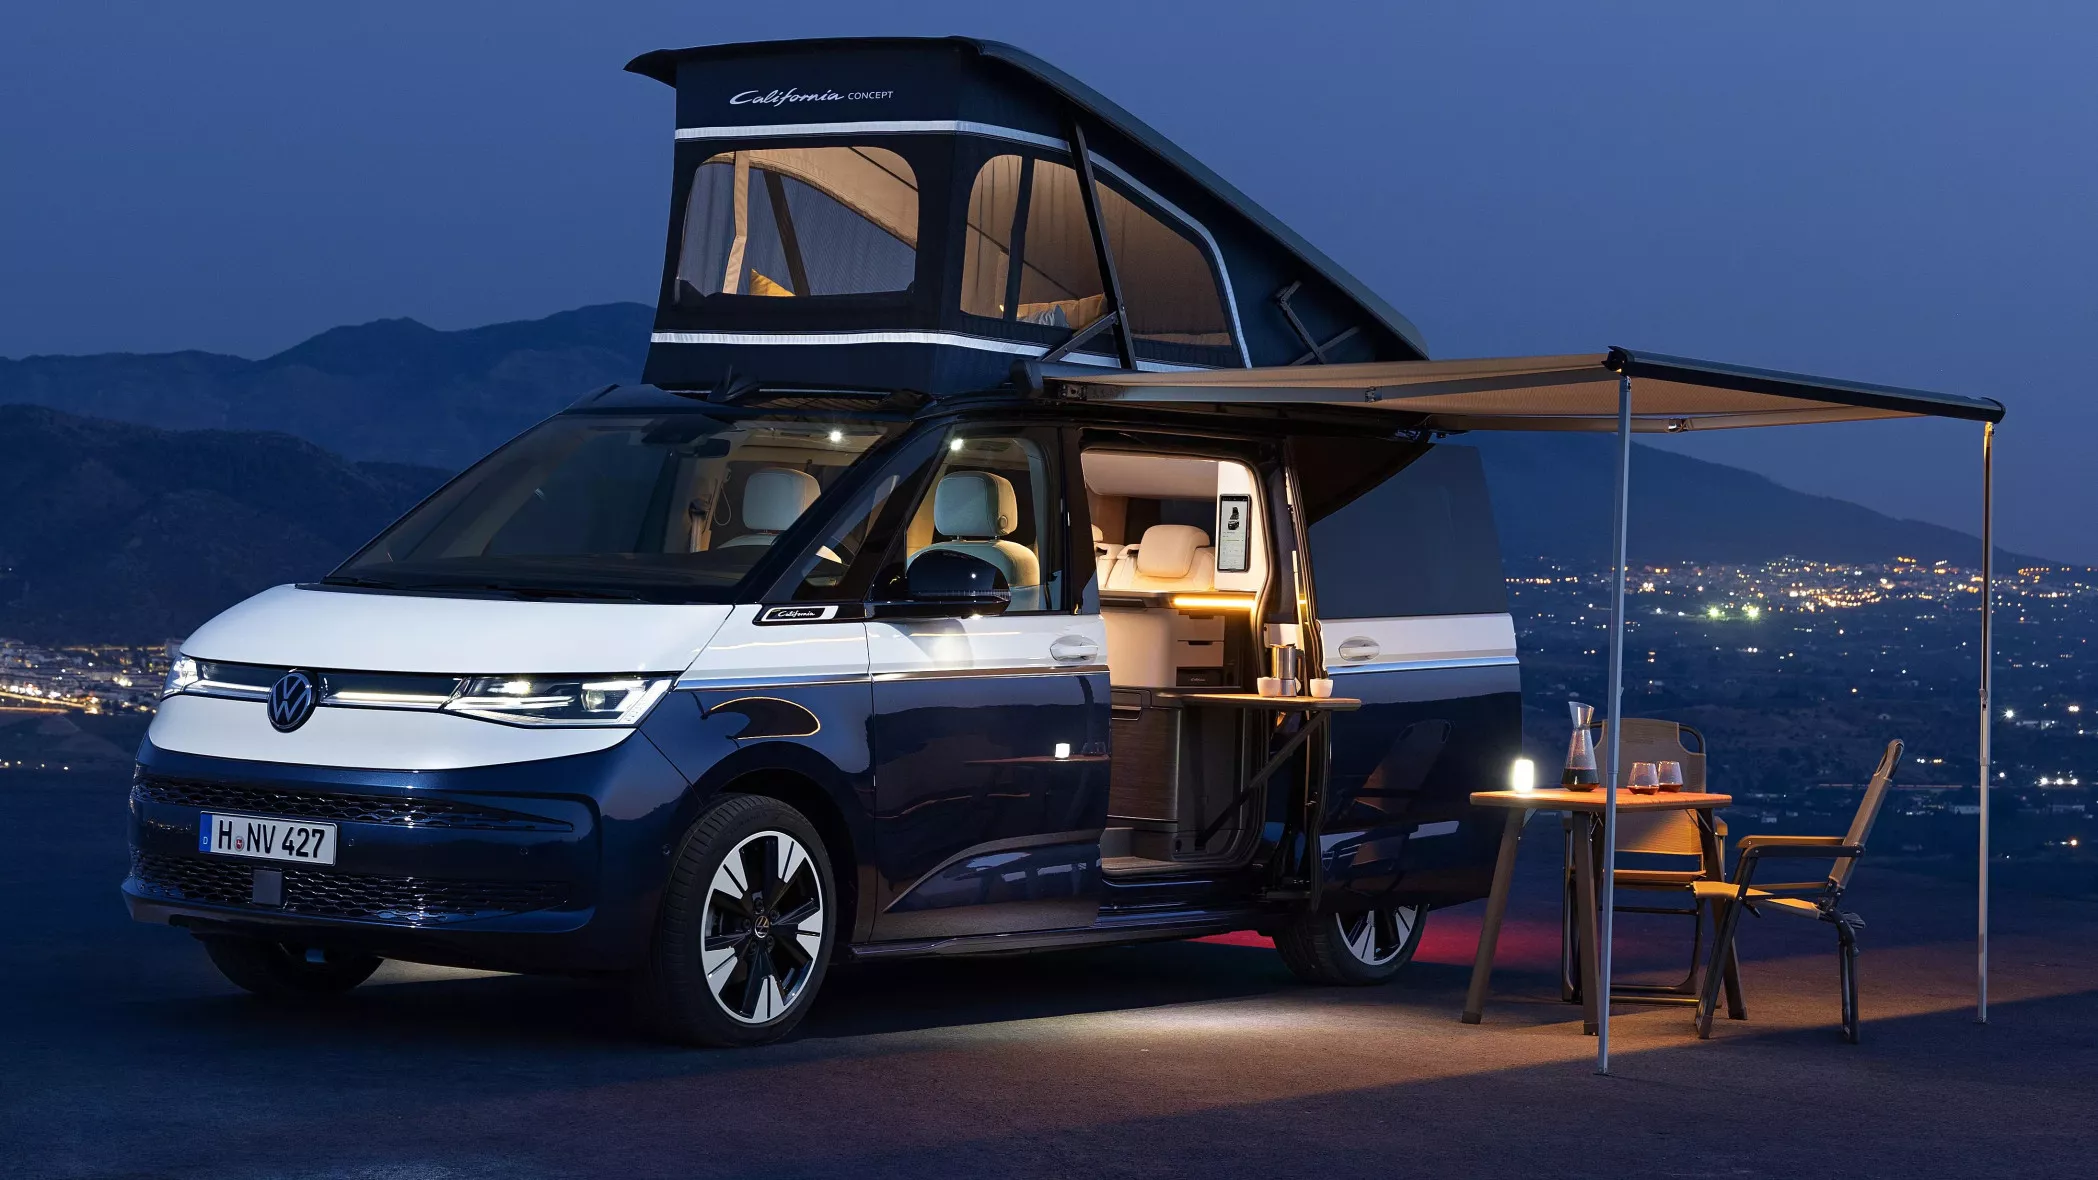 Première mondiale du nouveau California CONCEPT : le concept présenté,  proche du modèle de série, esquisse l'avenir du van aménagé de la marque. -  Volkswagen